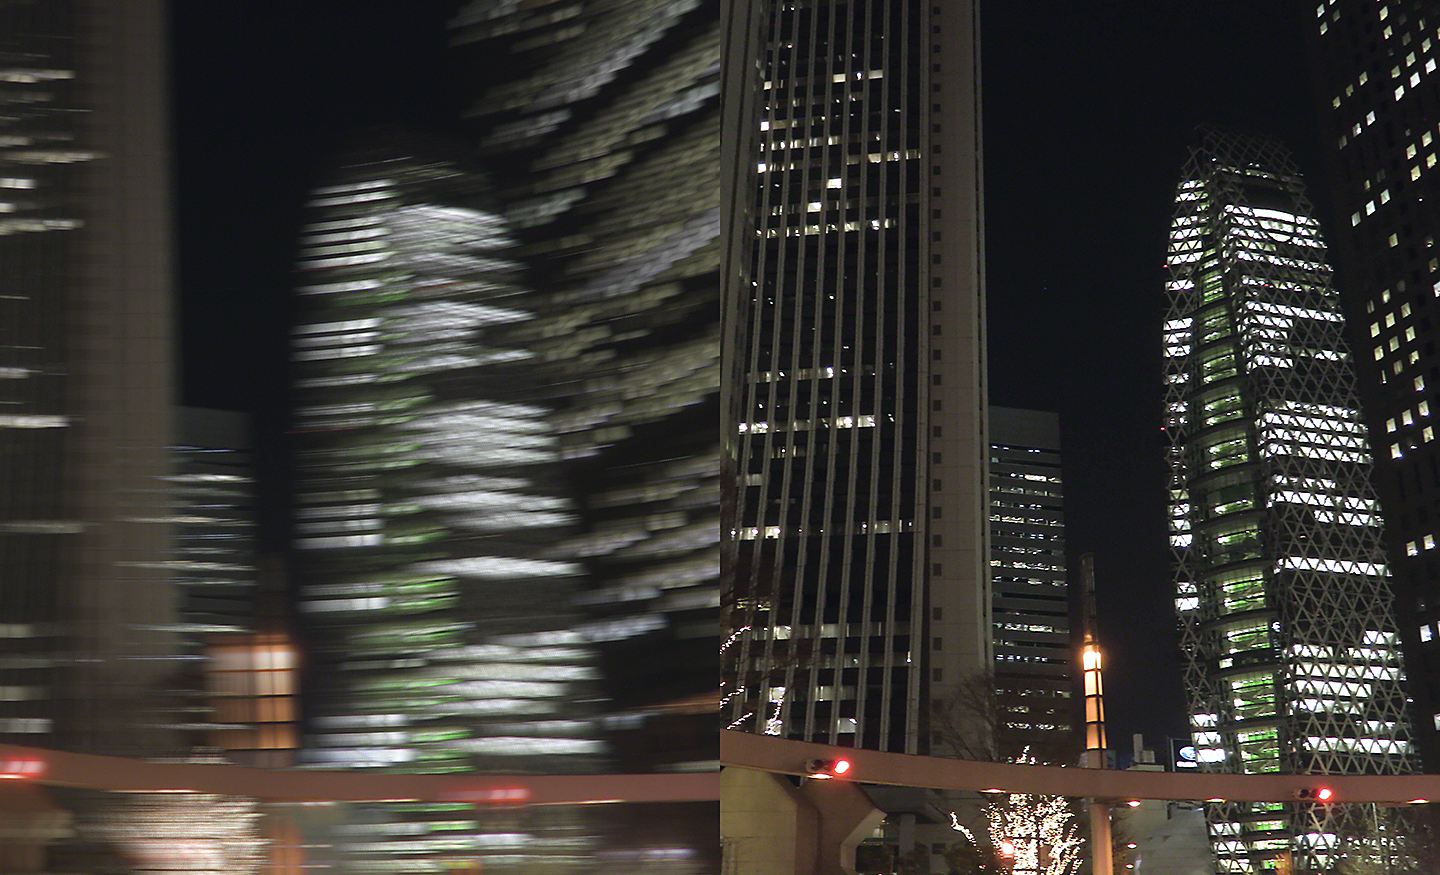 Două imagini cu peisaj urban pe timp de noapte, una estompată, cealaltă cu focalizare clară.